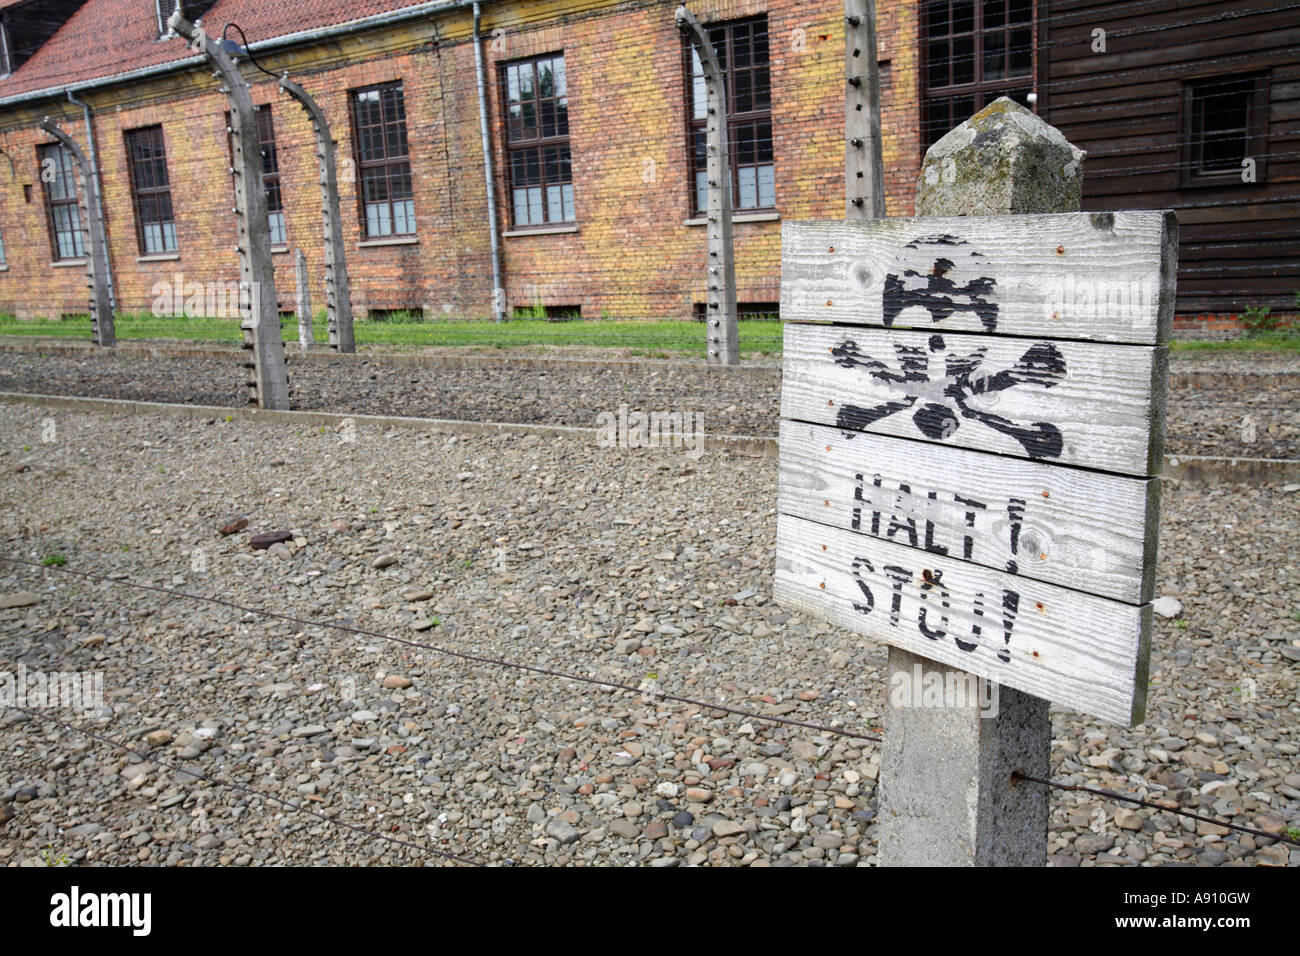 Mettre un terme à un panneau d'avertissement dans le camp de concentration nazi d'Auschwitz, Pologne Banque D'Images